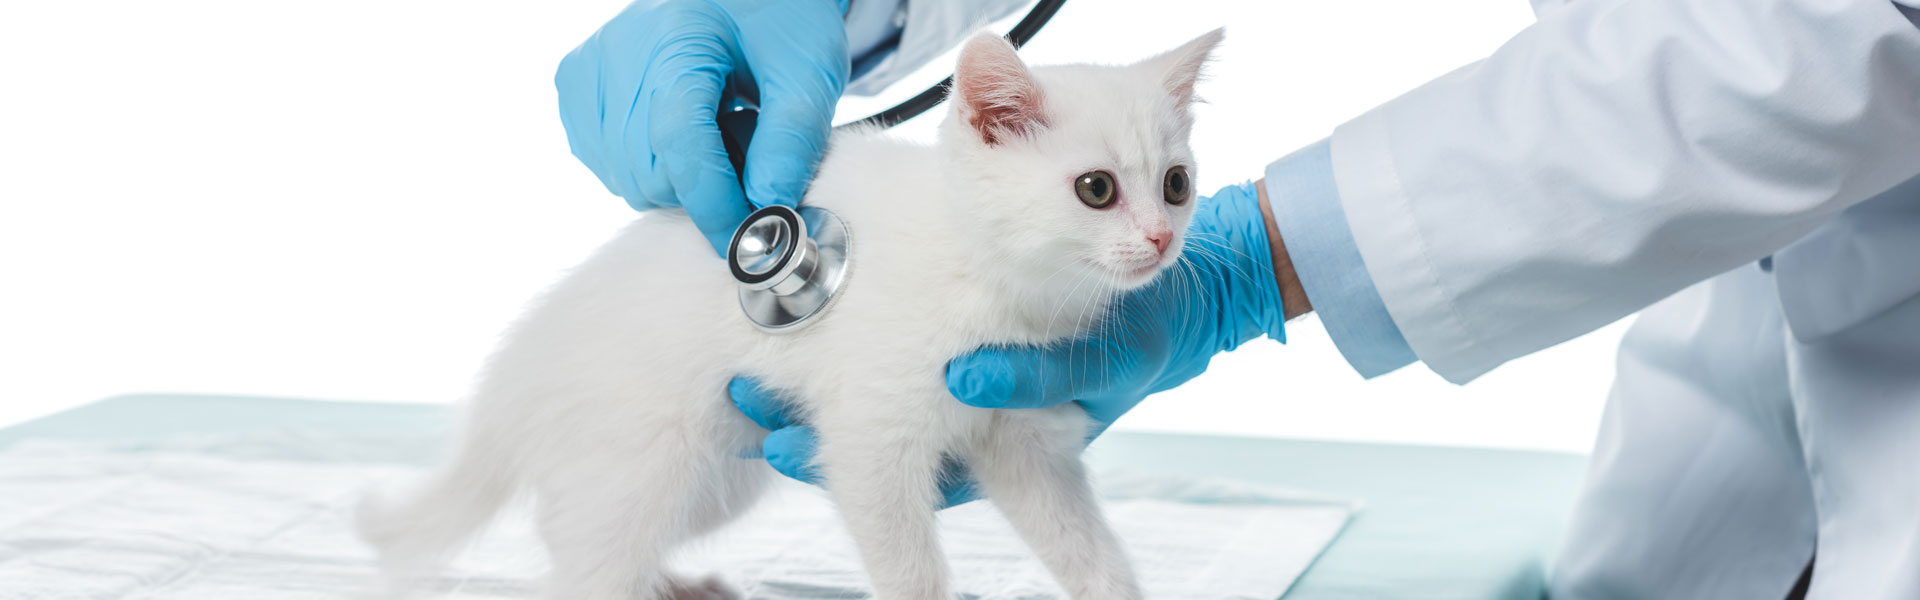 Veterinarian examining kitten